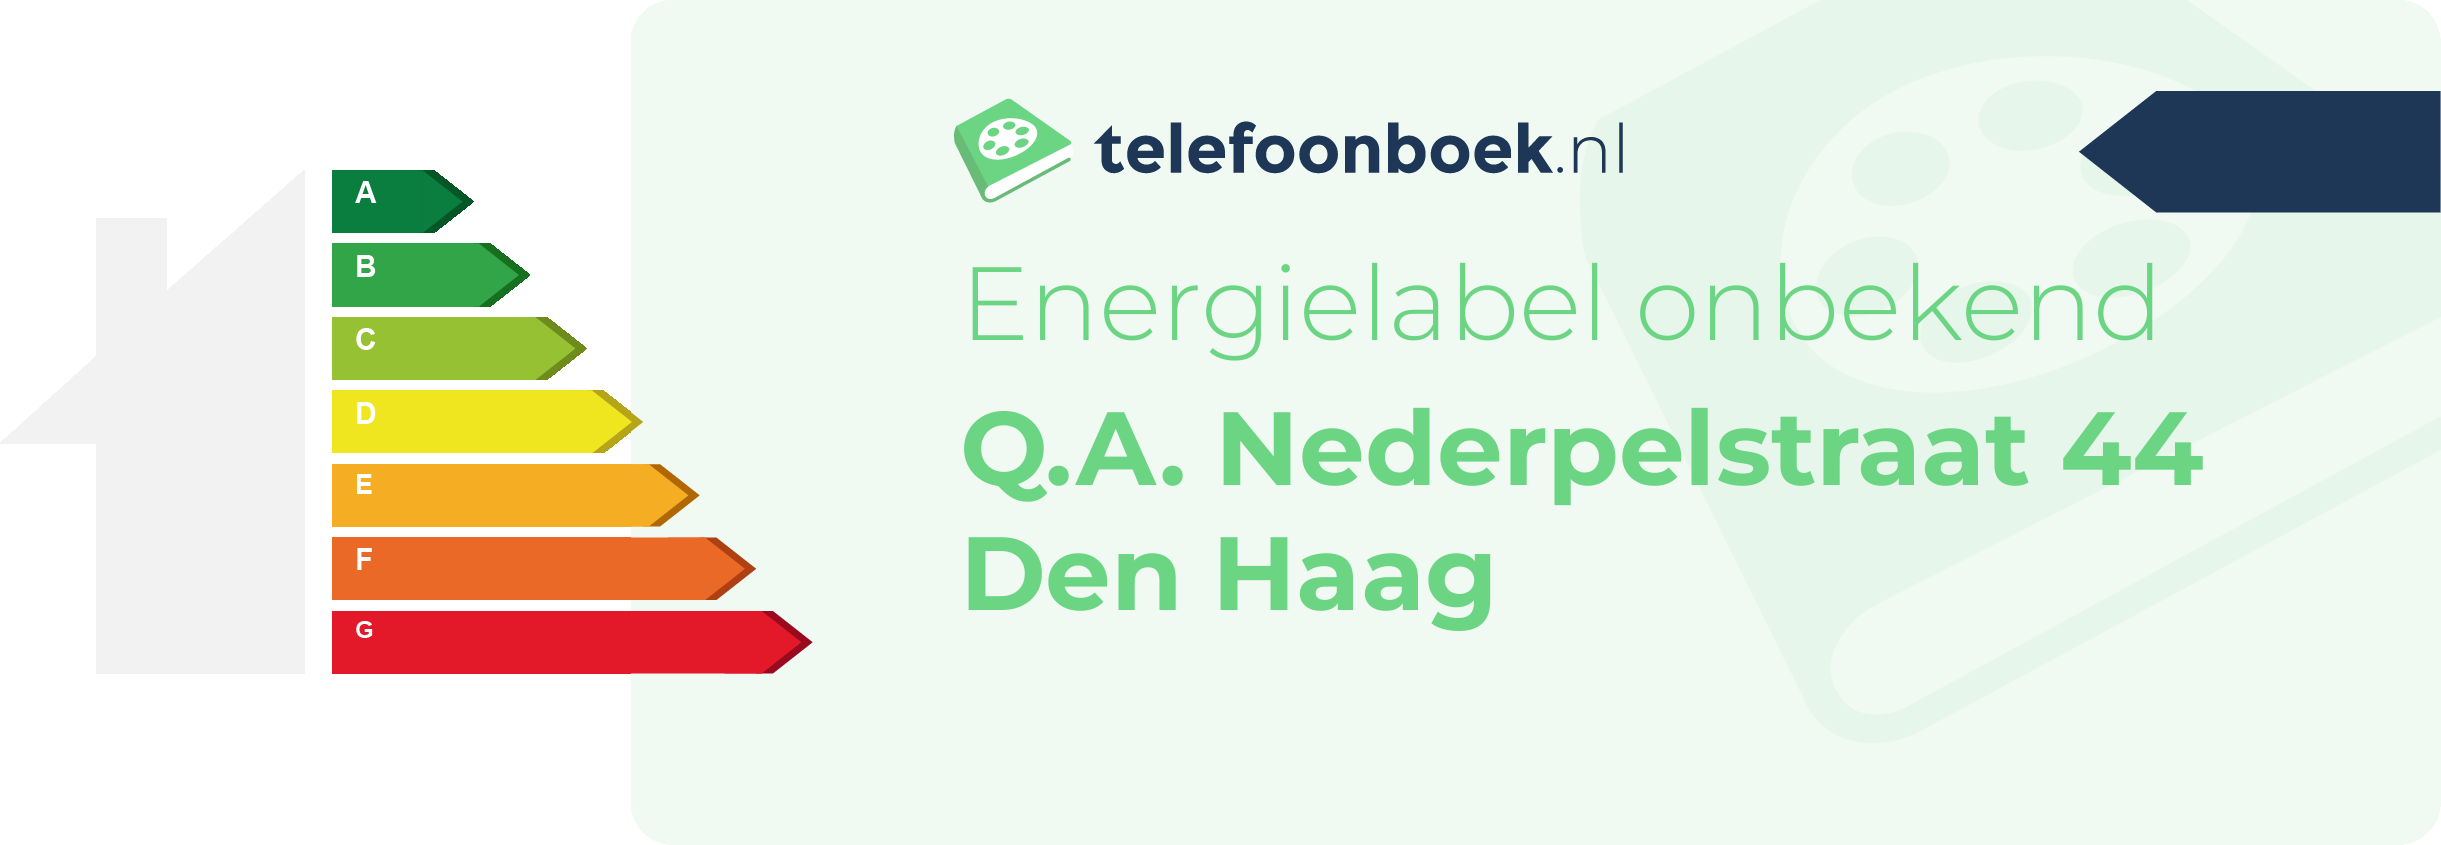 Energielabel Q.A. Nederpelstraat 44 Den Haag